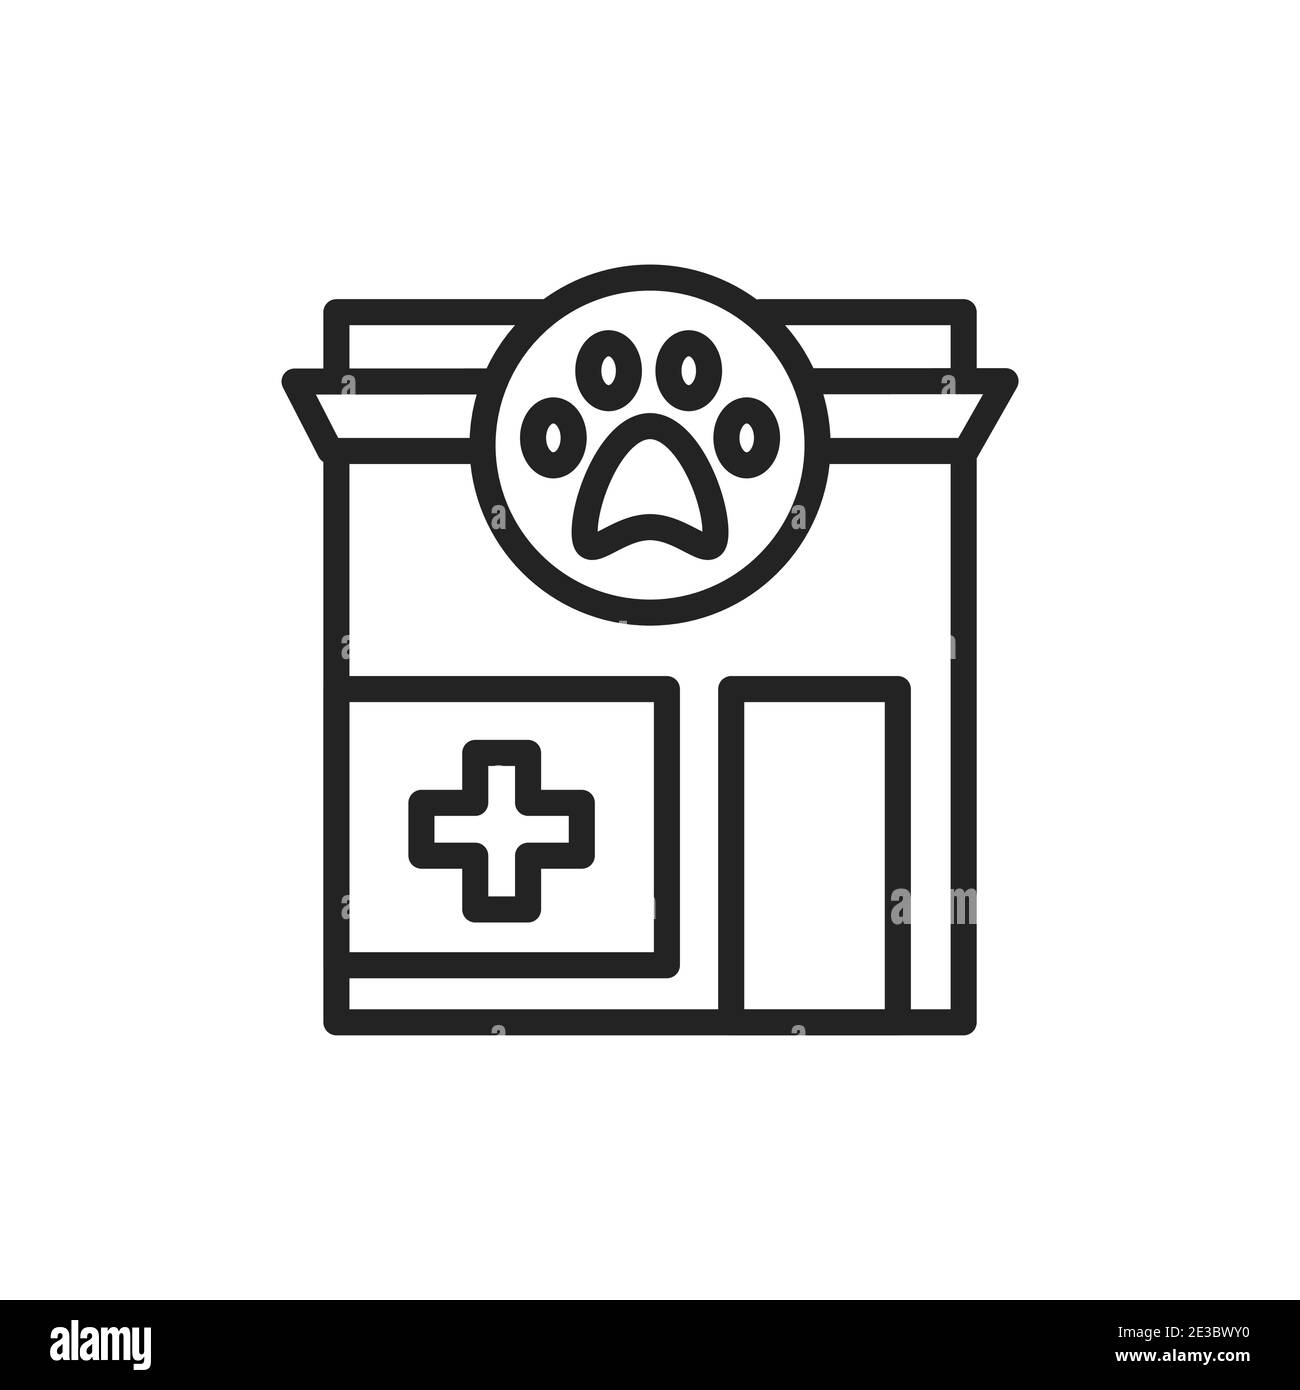 Icona della linea nera della clinica veterinaria. Servizio medico e animale di trattamento. Elemento vettoriale isolato. Pittogramma per pagina web, app mobile, promo. Illustrazione Vettoriale